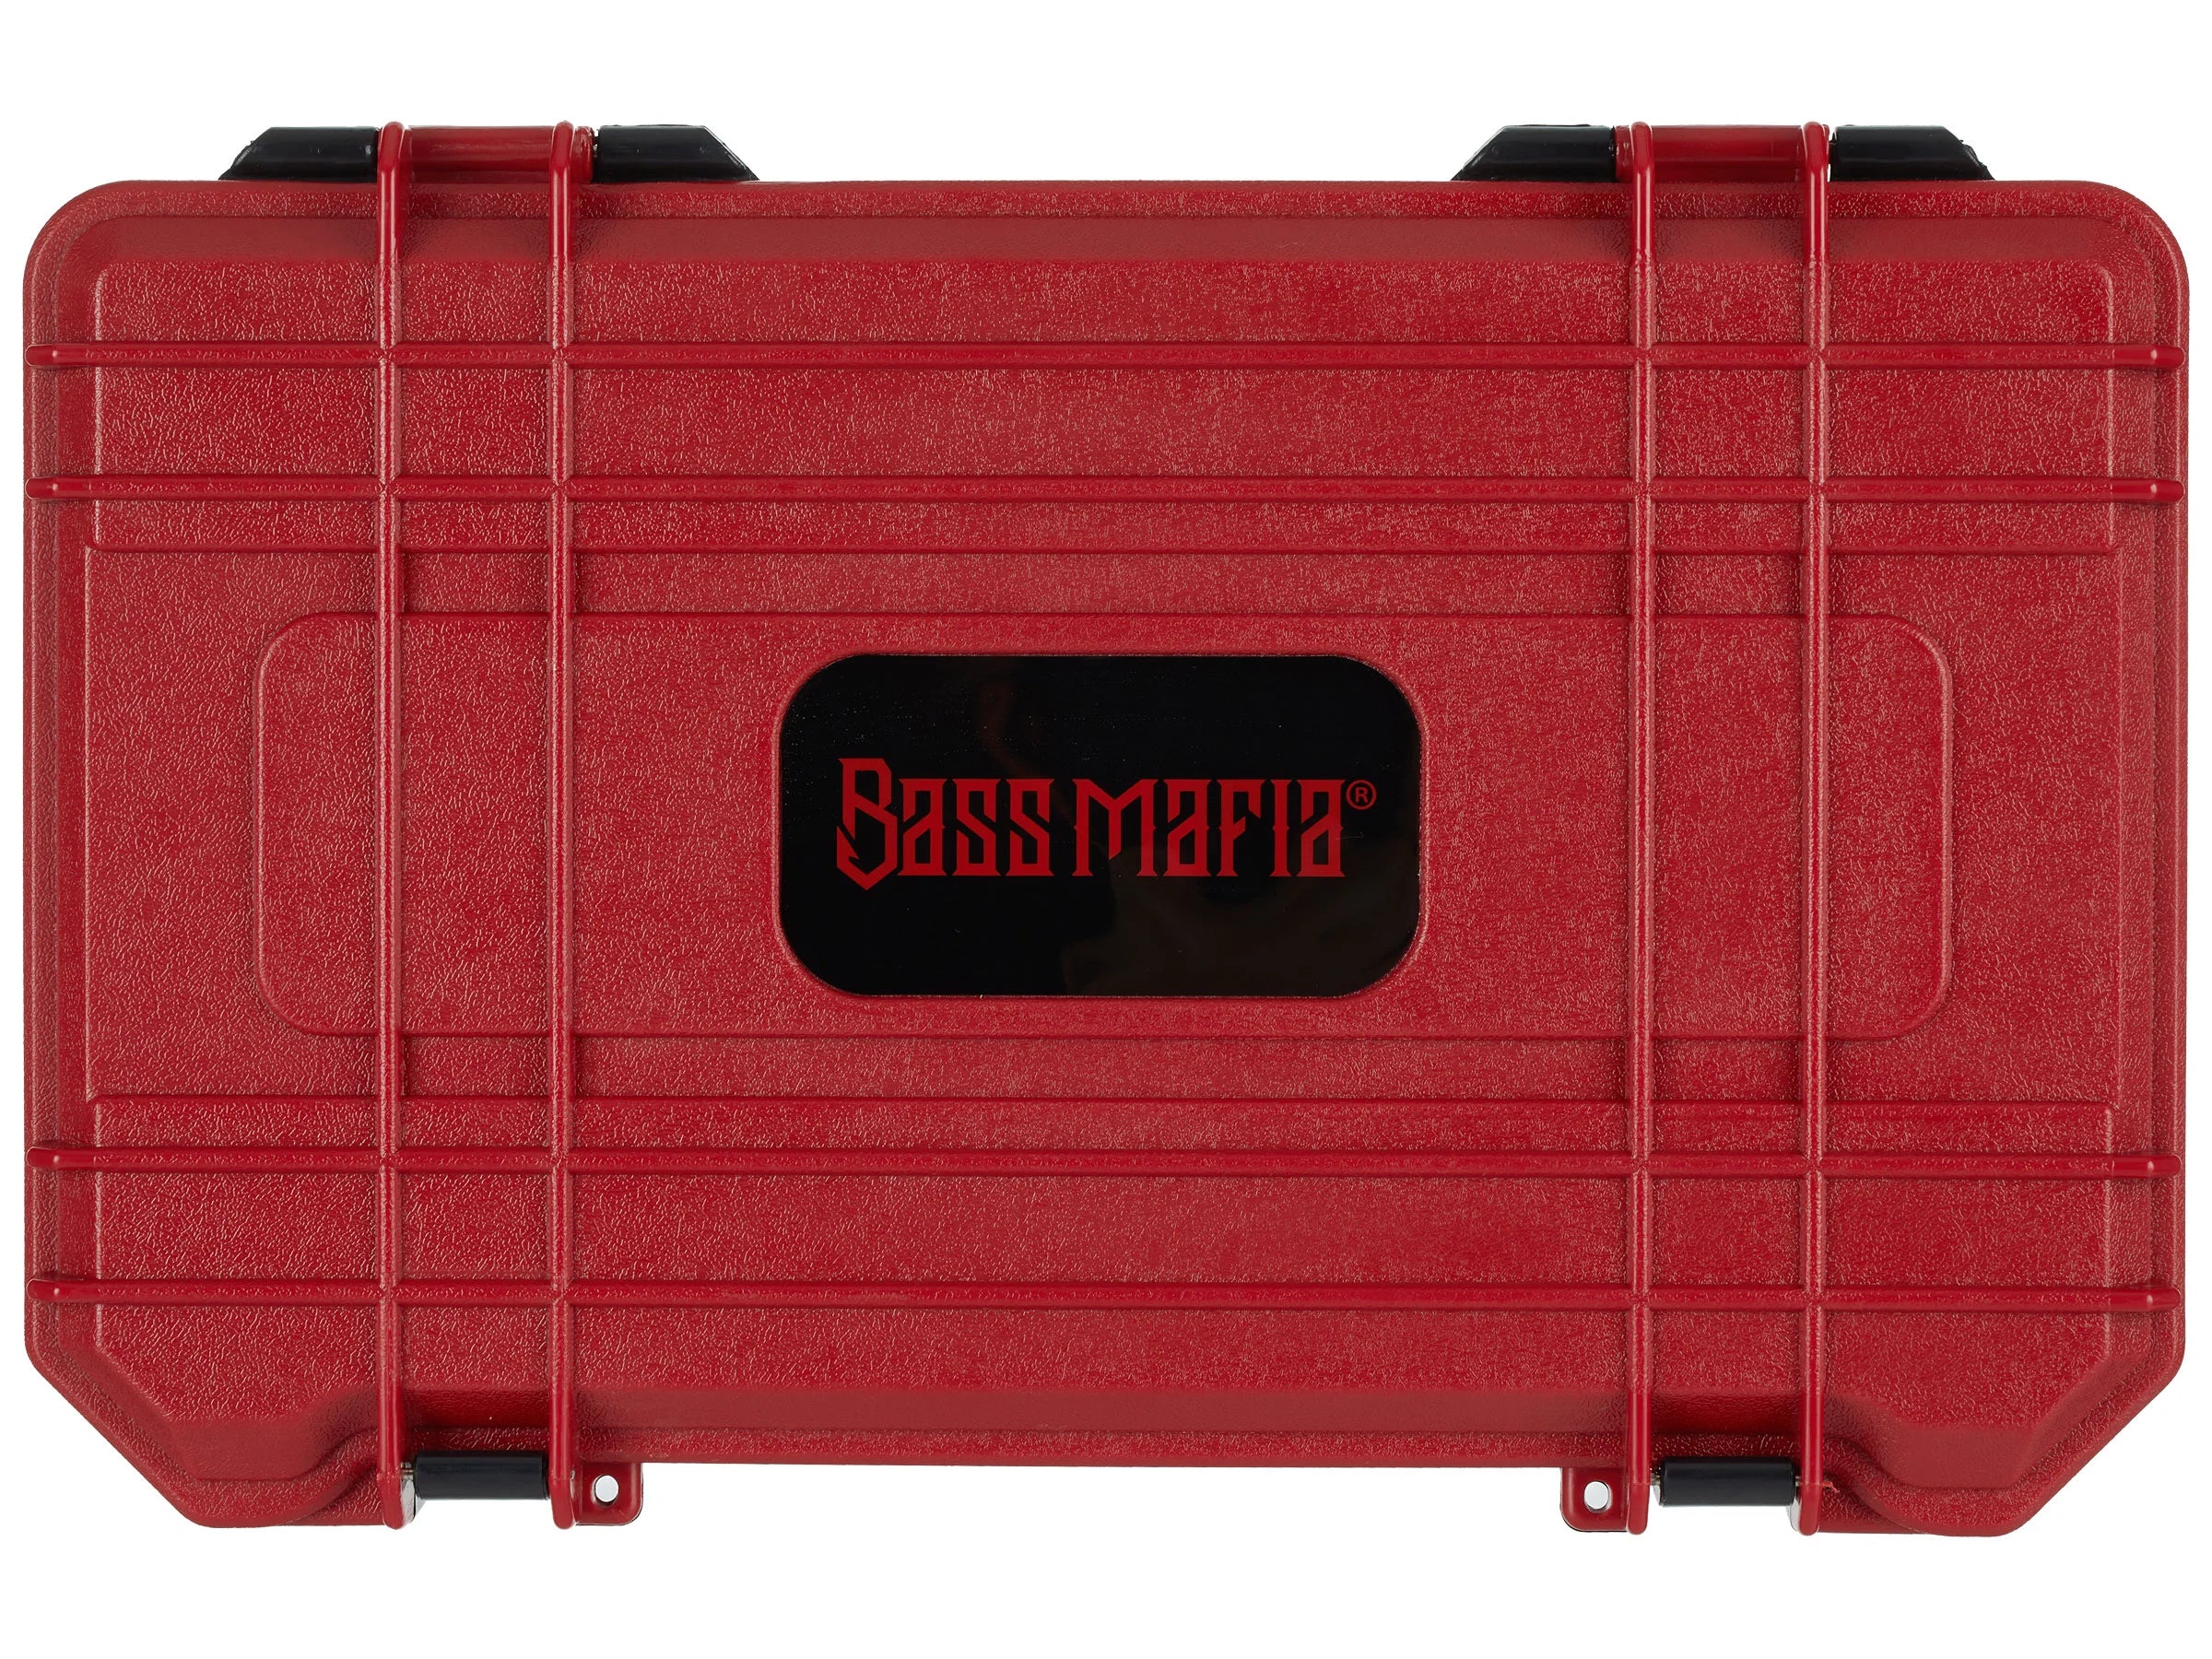 BASS MAFIA COFFIN 3700 DD-4